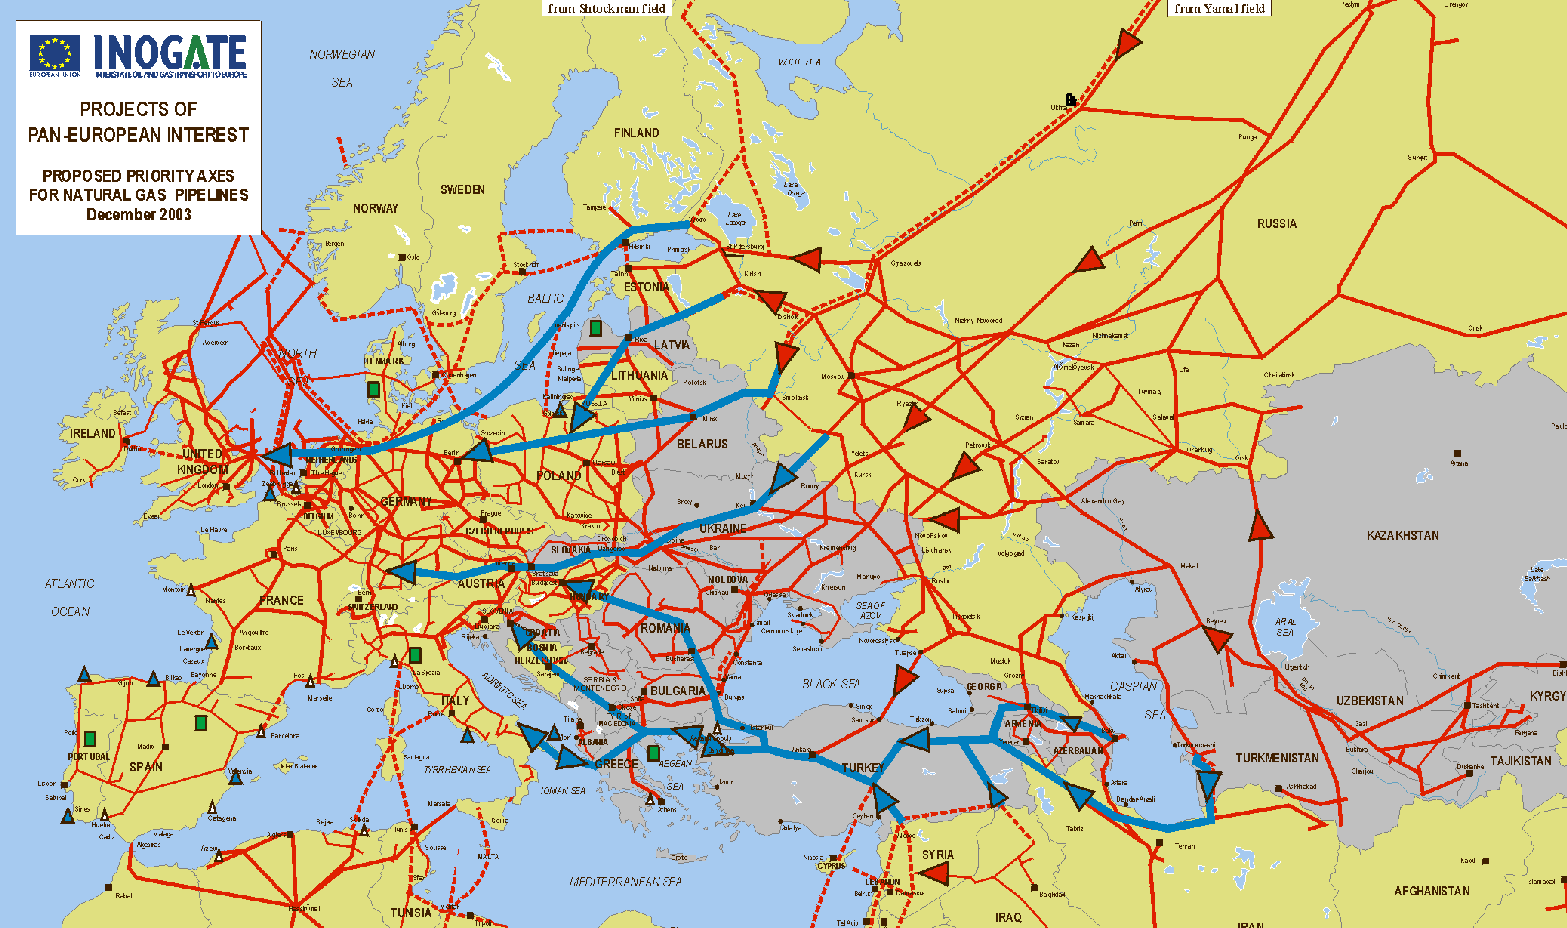 gasdotti-russia-europa